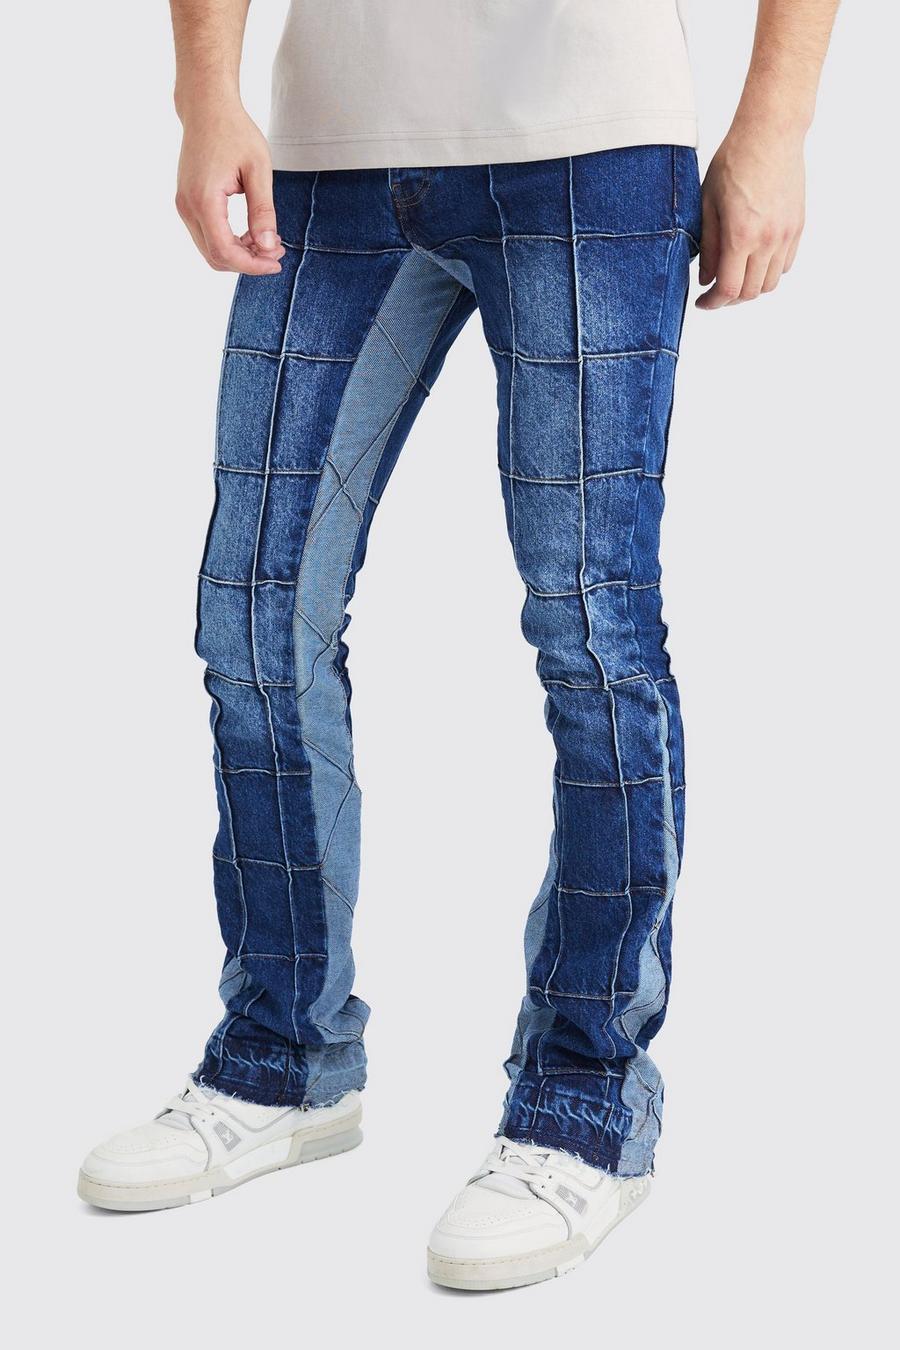 Jeans Tall Slim Fit in denim rigido con pannelli a zampa e inserti, Vintage blue